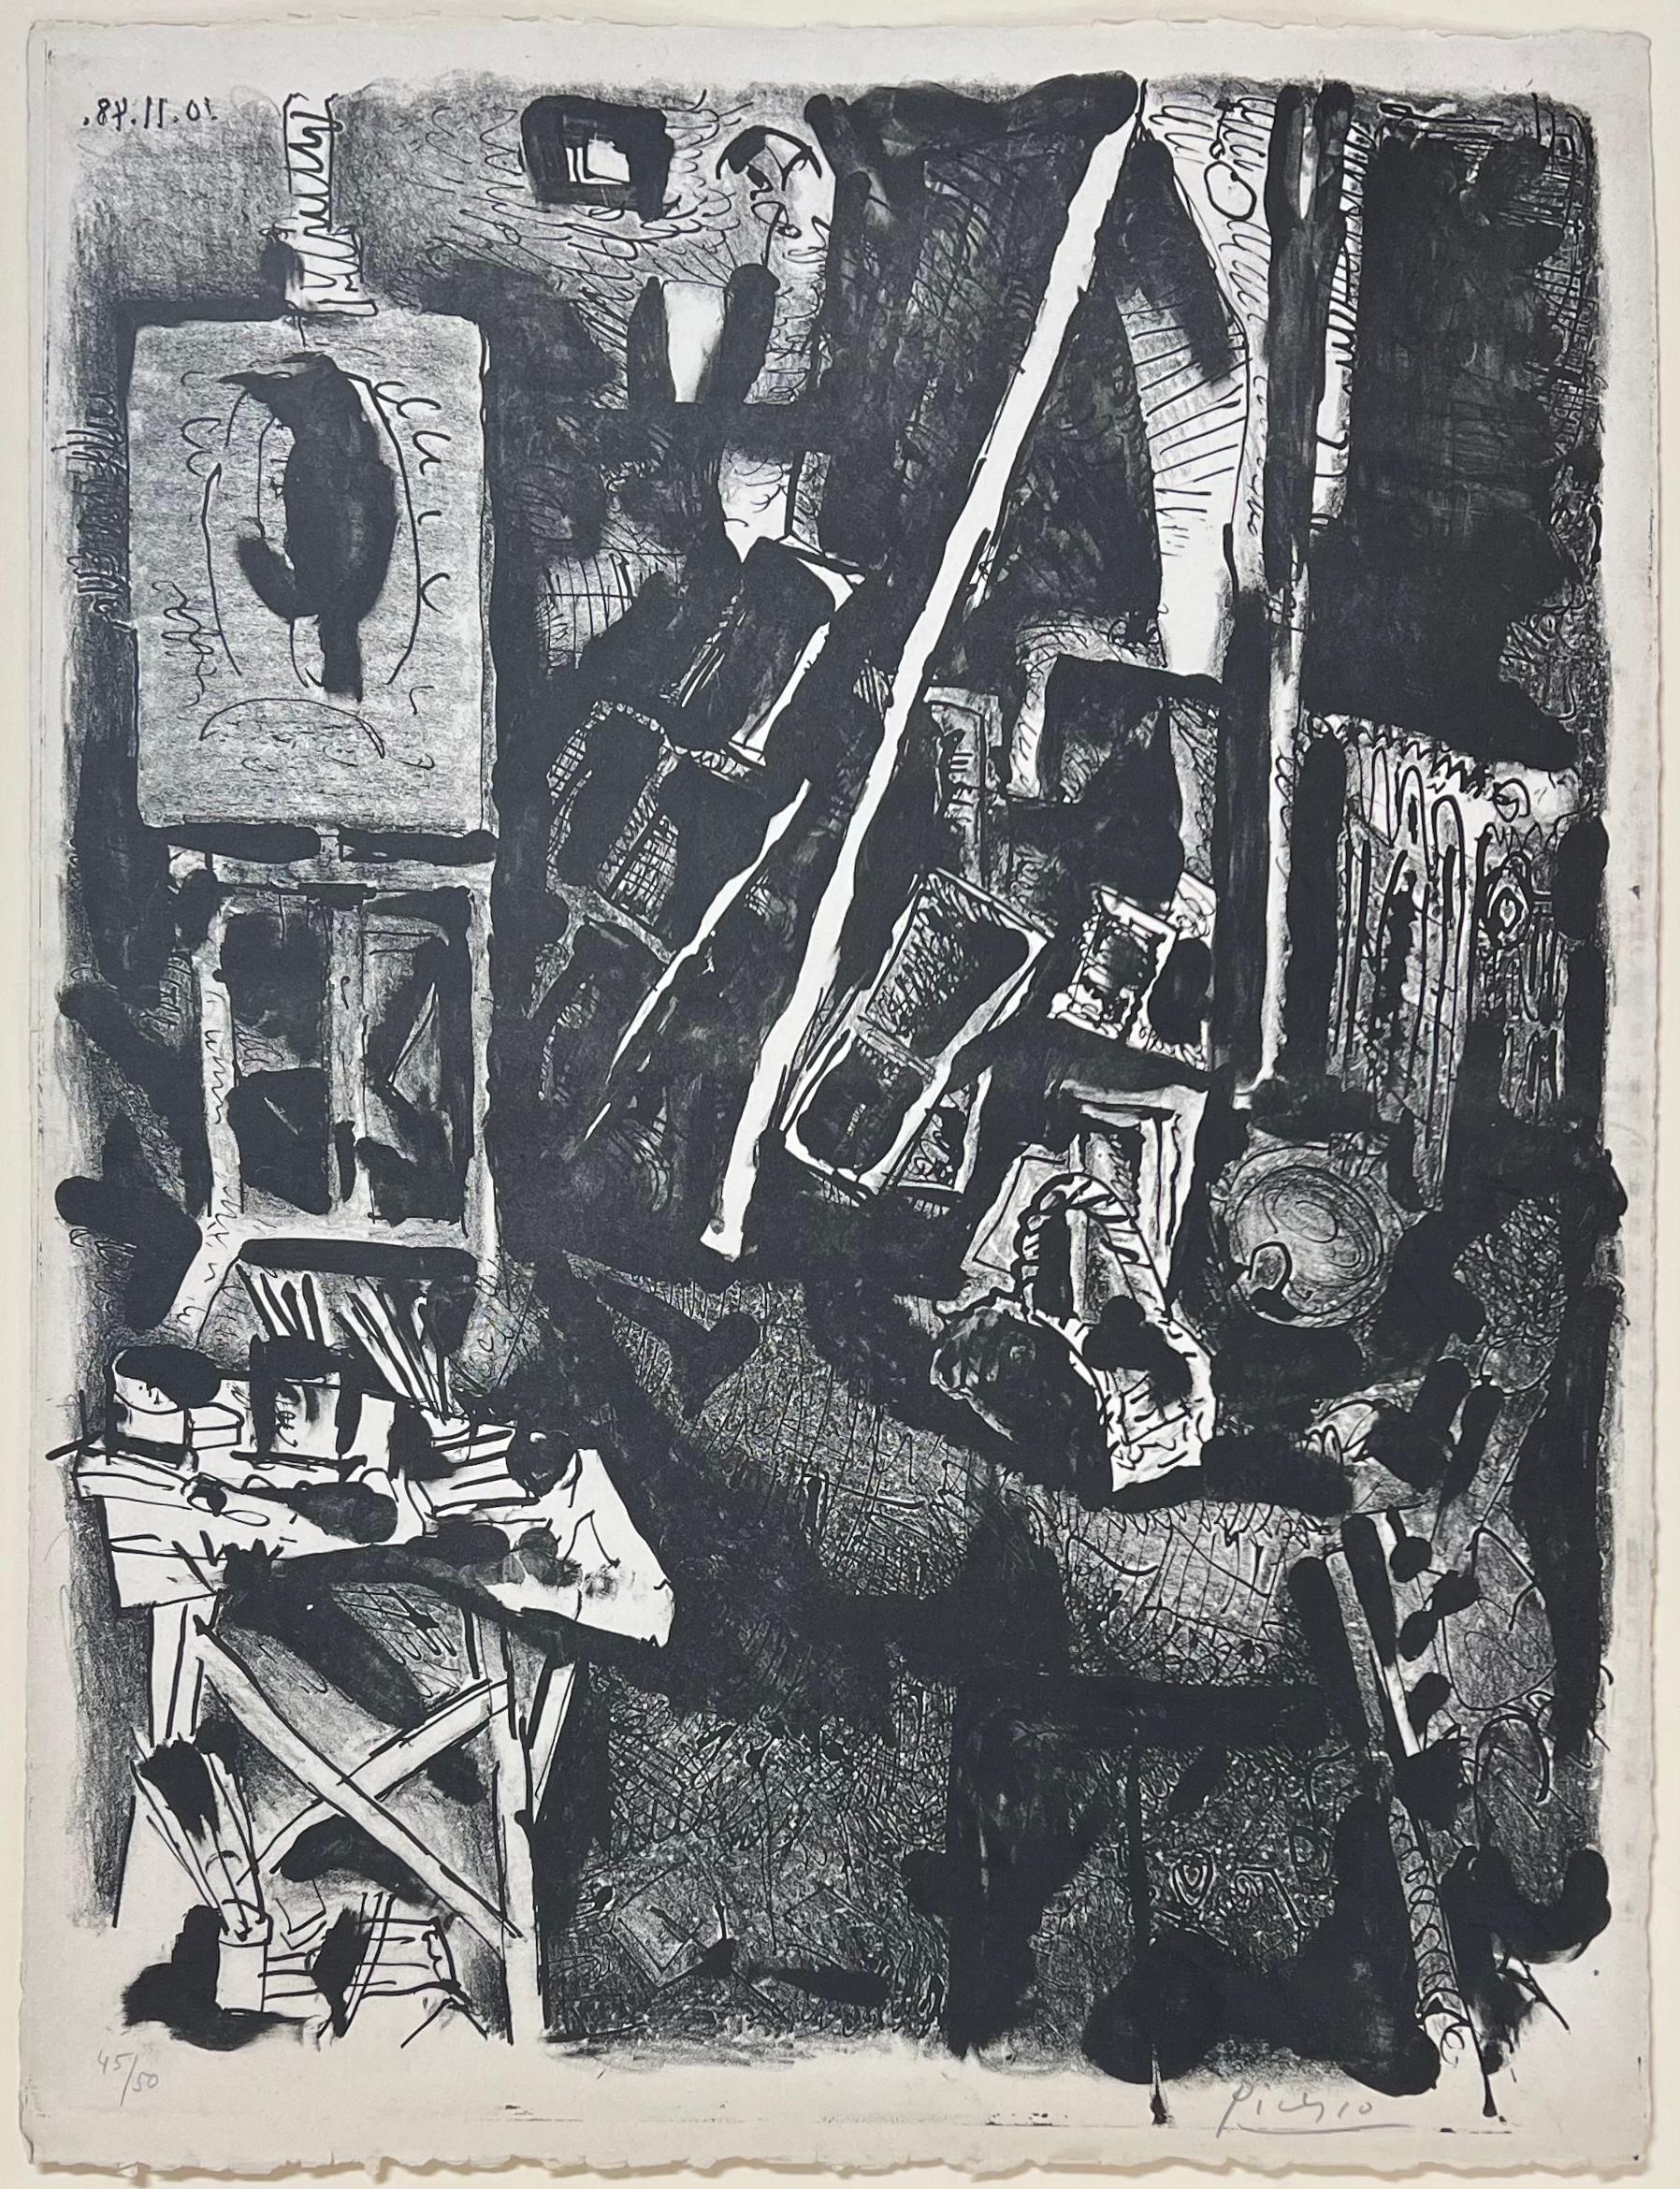 Pablo Picasso
L'Atelier (Das Atelier), 1948
Lithographie
Vom Künstler handsigniert und nummeriert 45/50 aus einer Auflage von 50 Stück.
Maße: 25,5 x 19,5 Zoll
Im Katalog des Künstlers "Picasso Lithographe II" von Fernand Mourlot wird dieses Werk